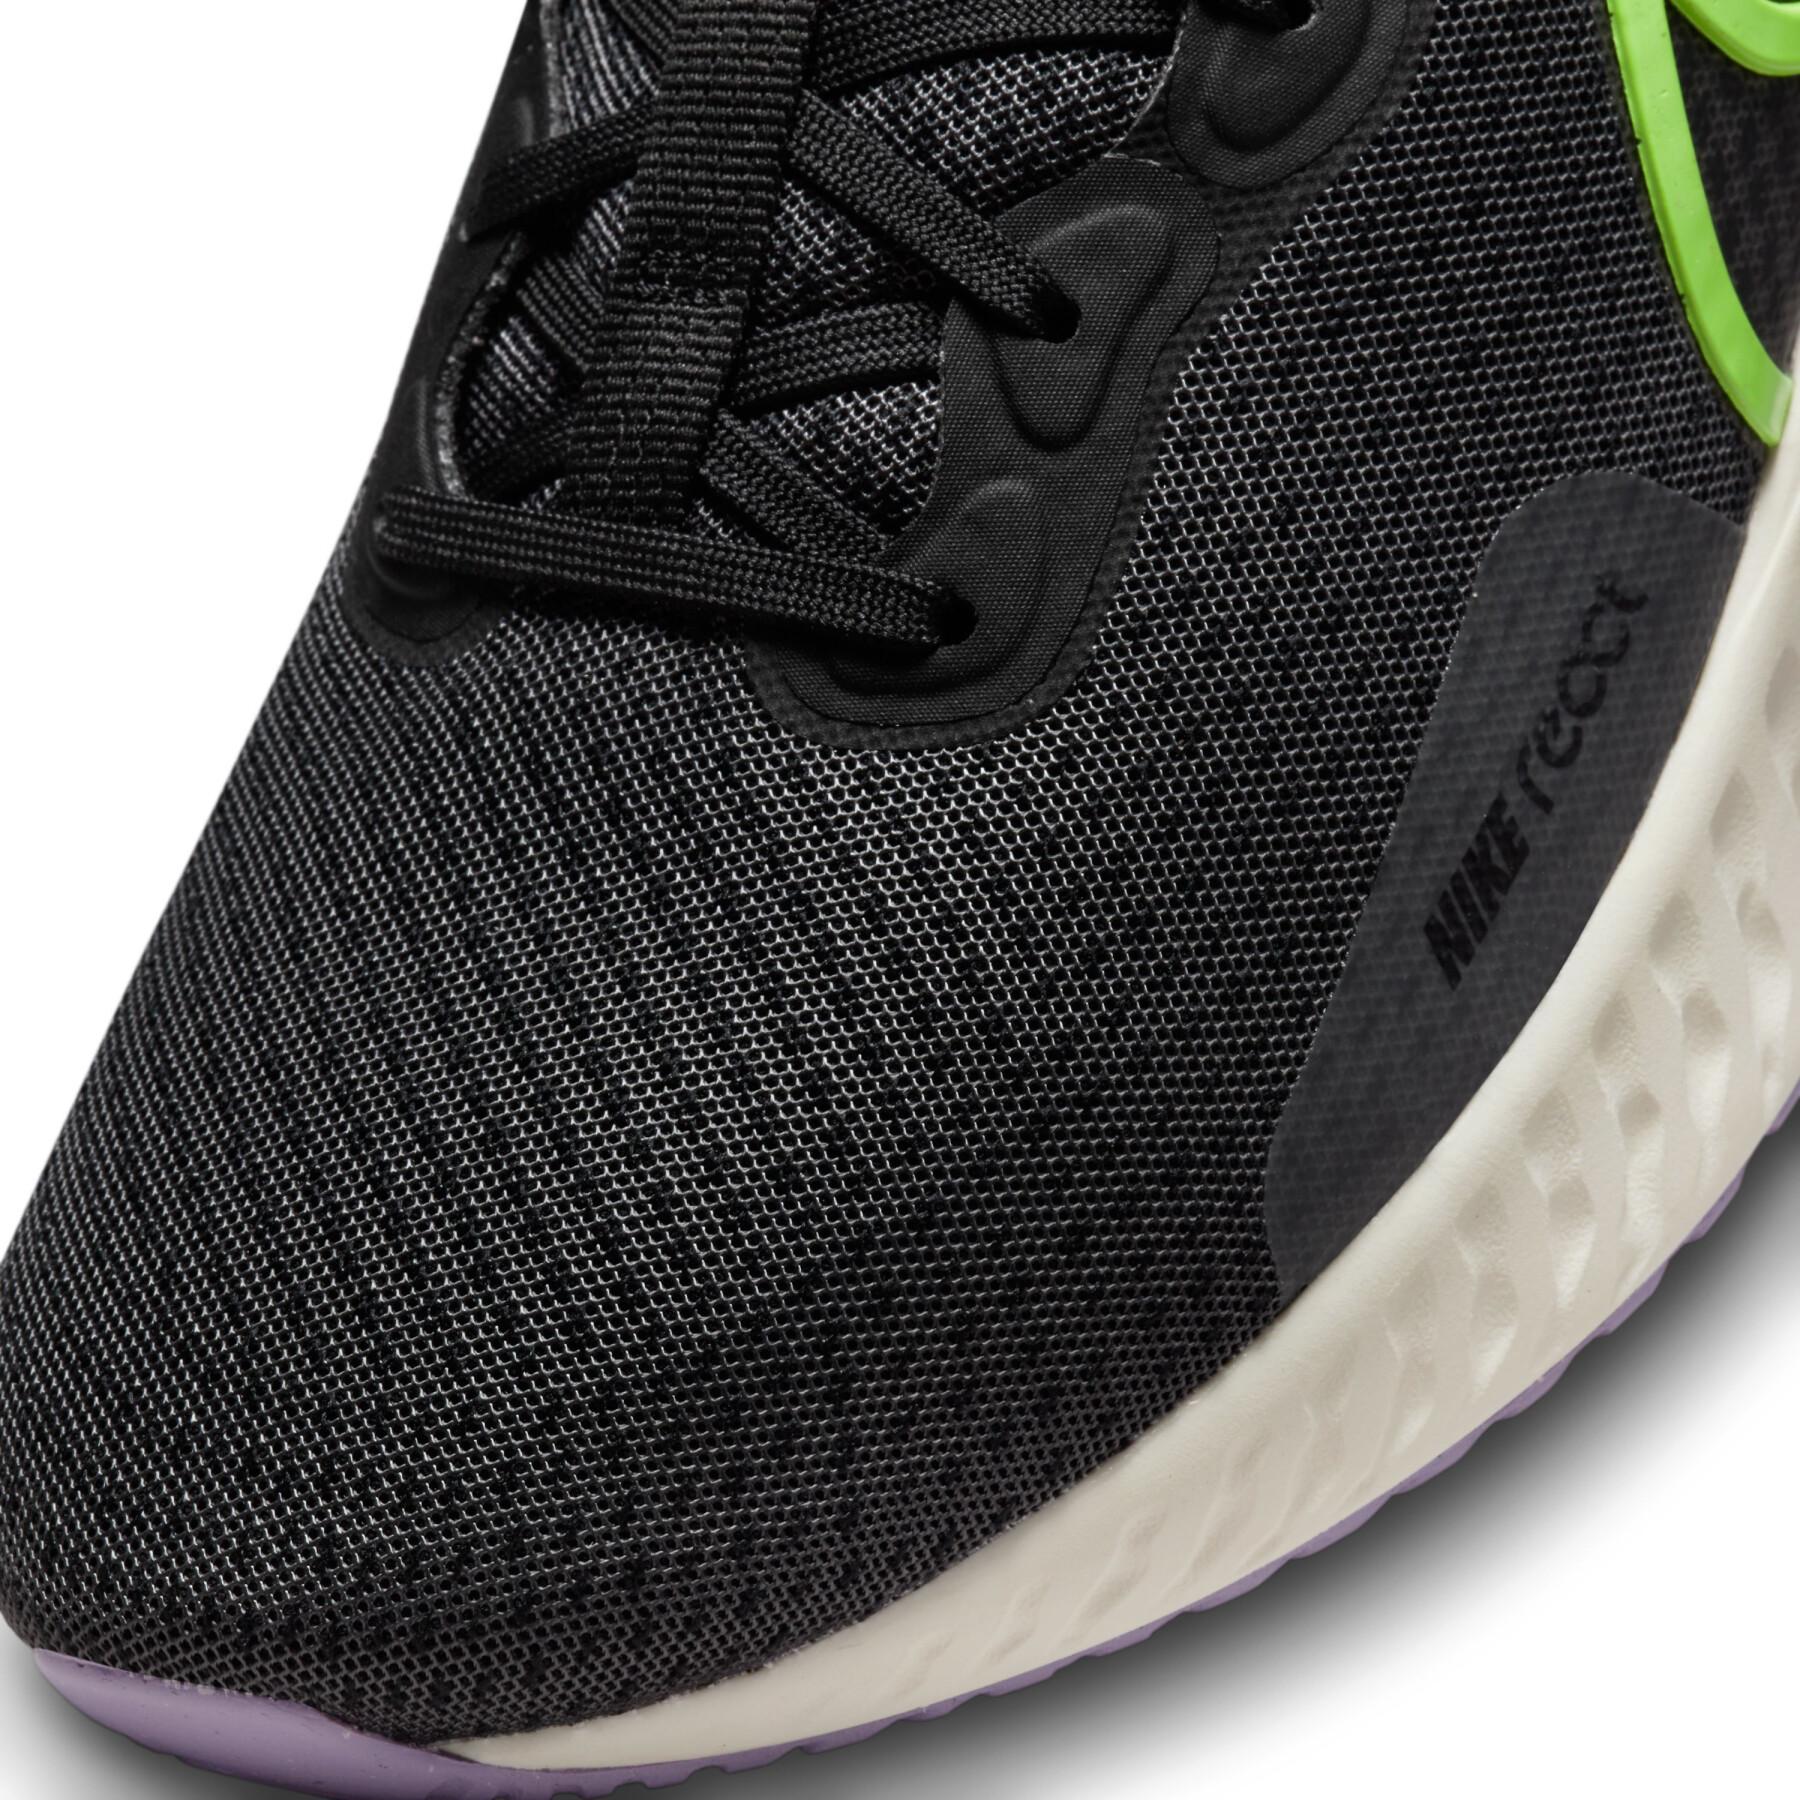 Chaussures de running Nike React Miler 3